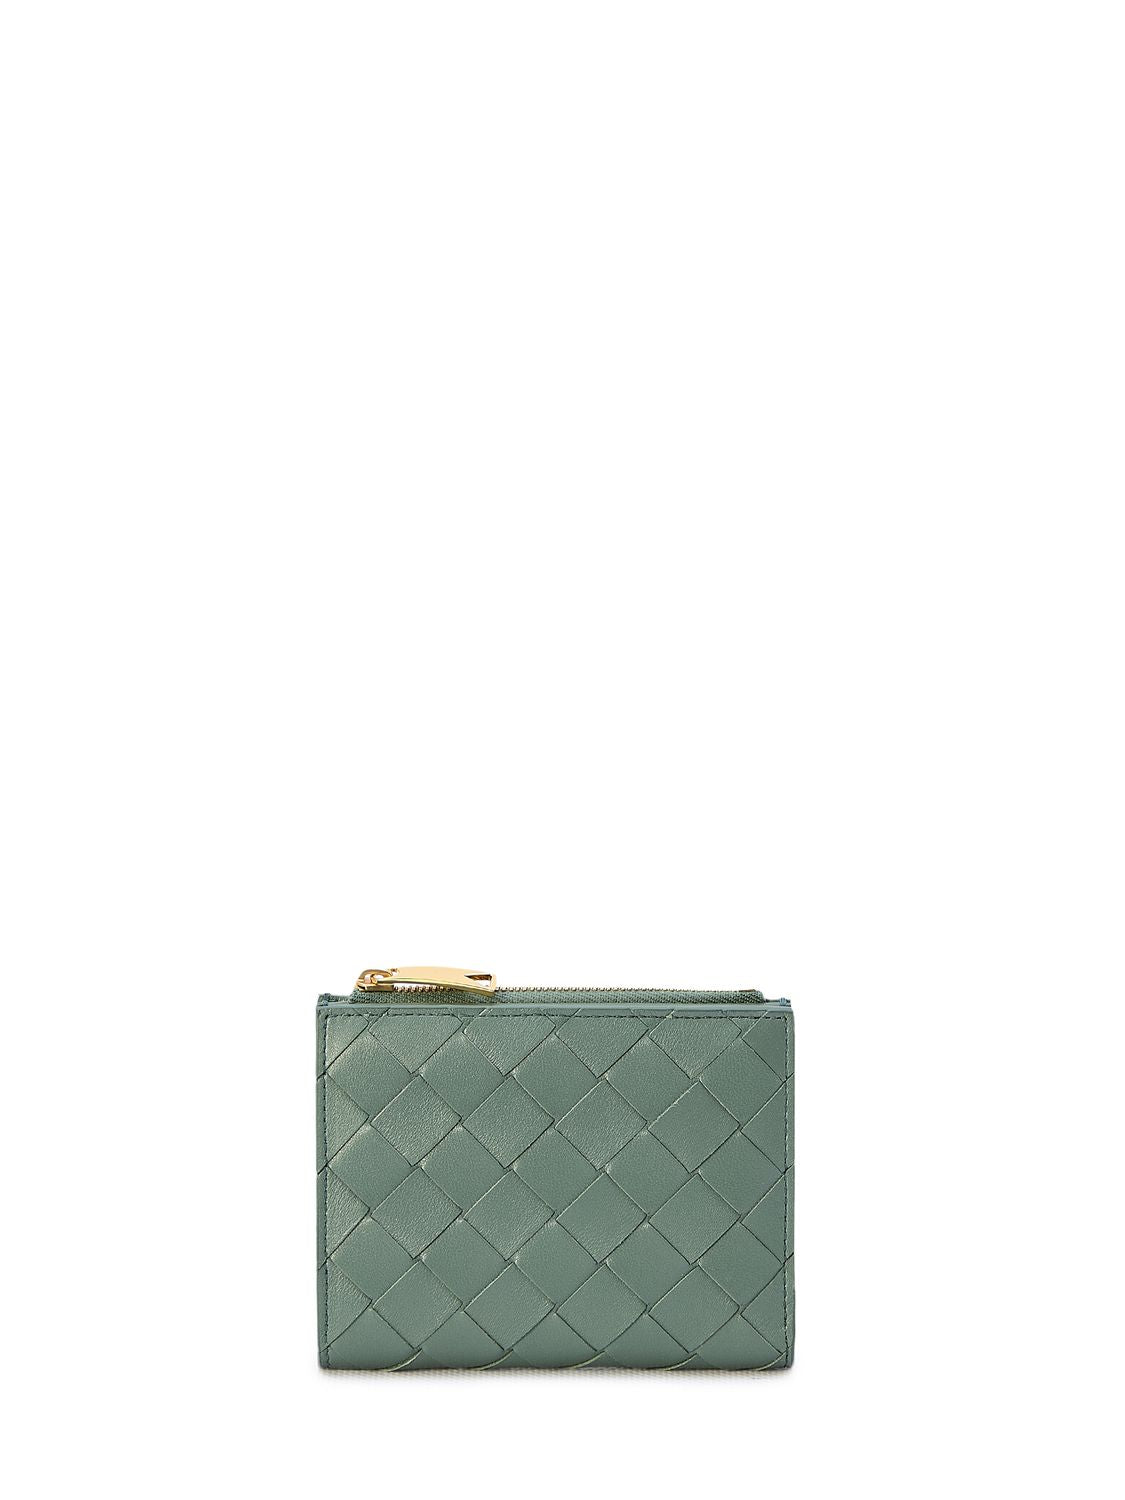 スタイリッシュでコンパクトな女性用グリーンレザーの二つ折り財布